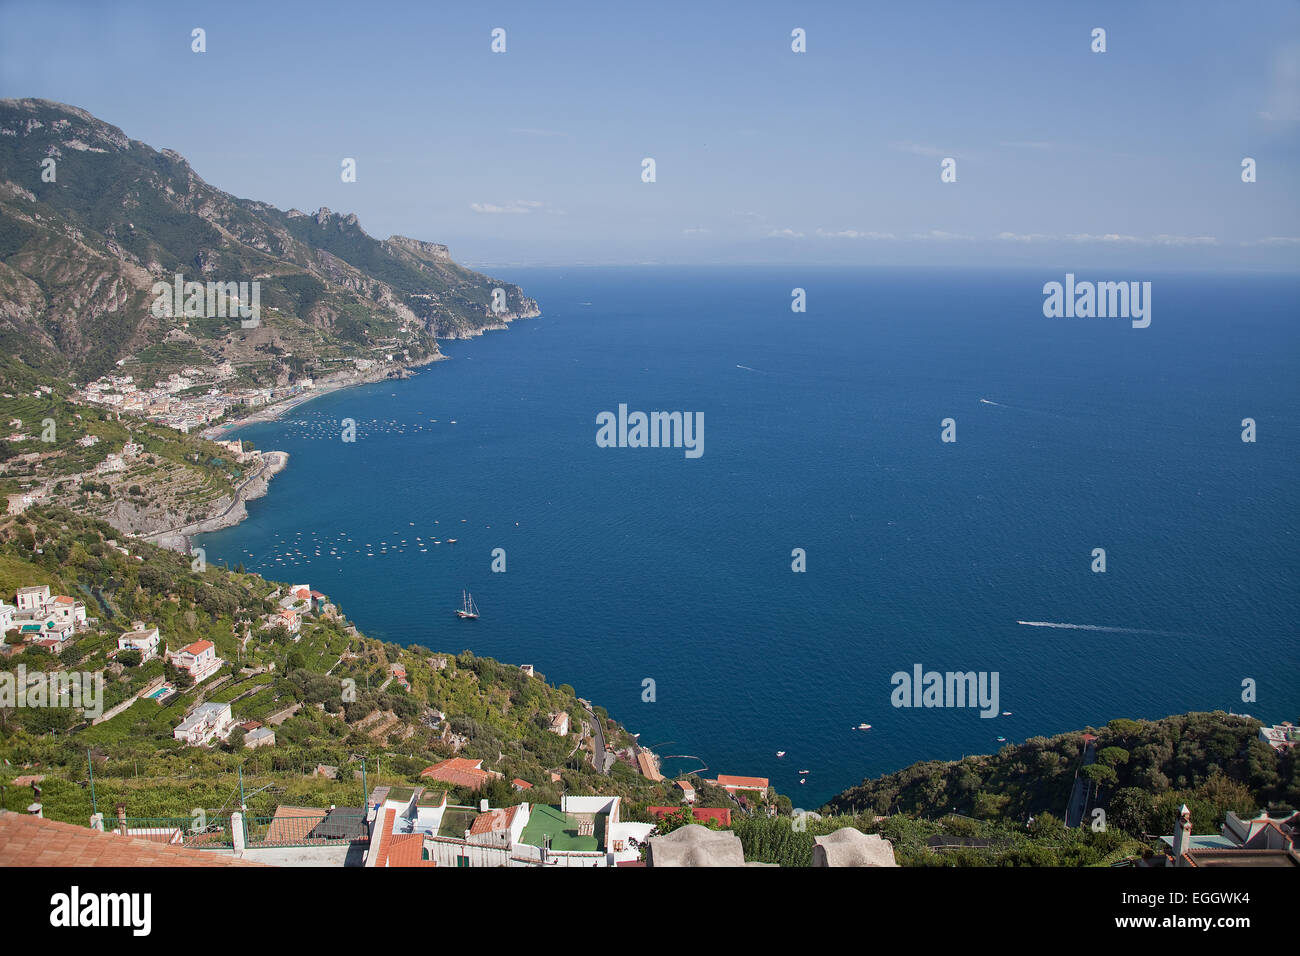 La mer Méditerranée ,et d'une vue sur la côte amalfitaine, où les toits en terre cuite ornent les collines verdoyantes qui descendent jusqu'en t Banque D'Images